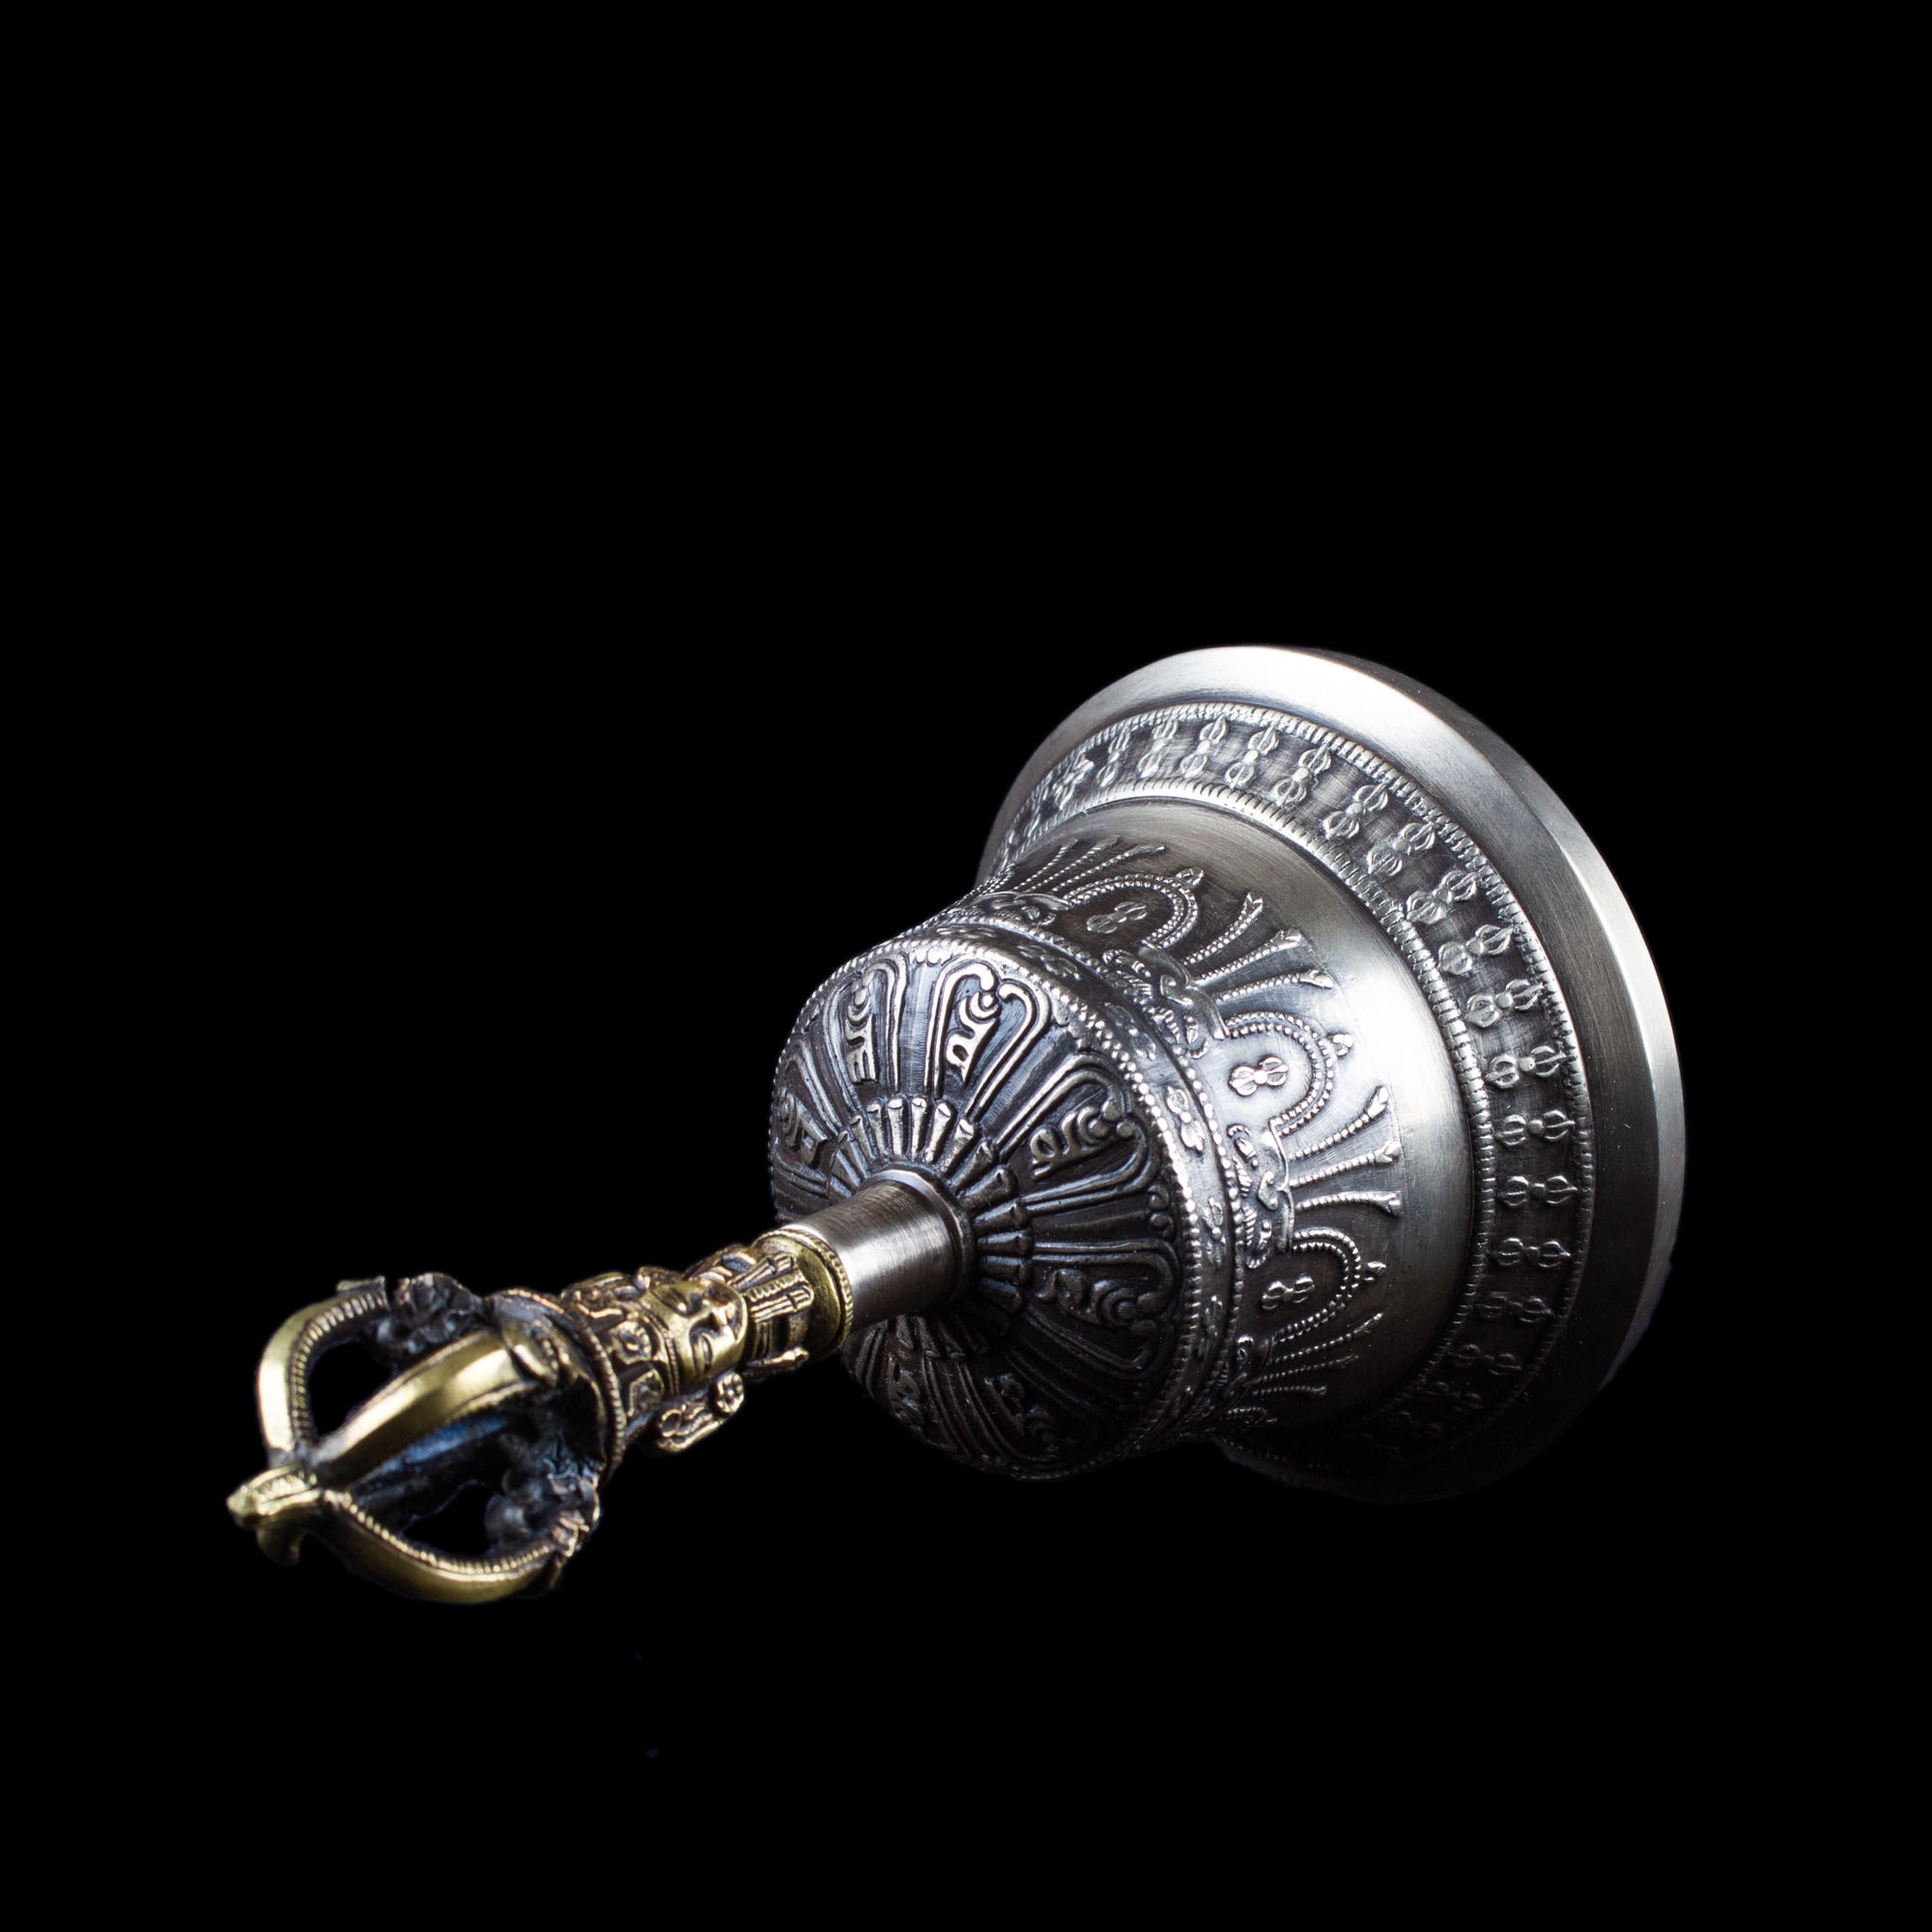 Колокольчик с ваджрой, 15 см, Оригинальный колокольчик из Дехрадуна (Индия), серебристый, патинированный